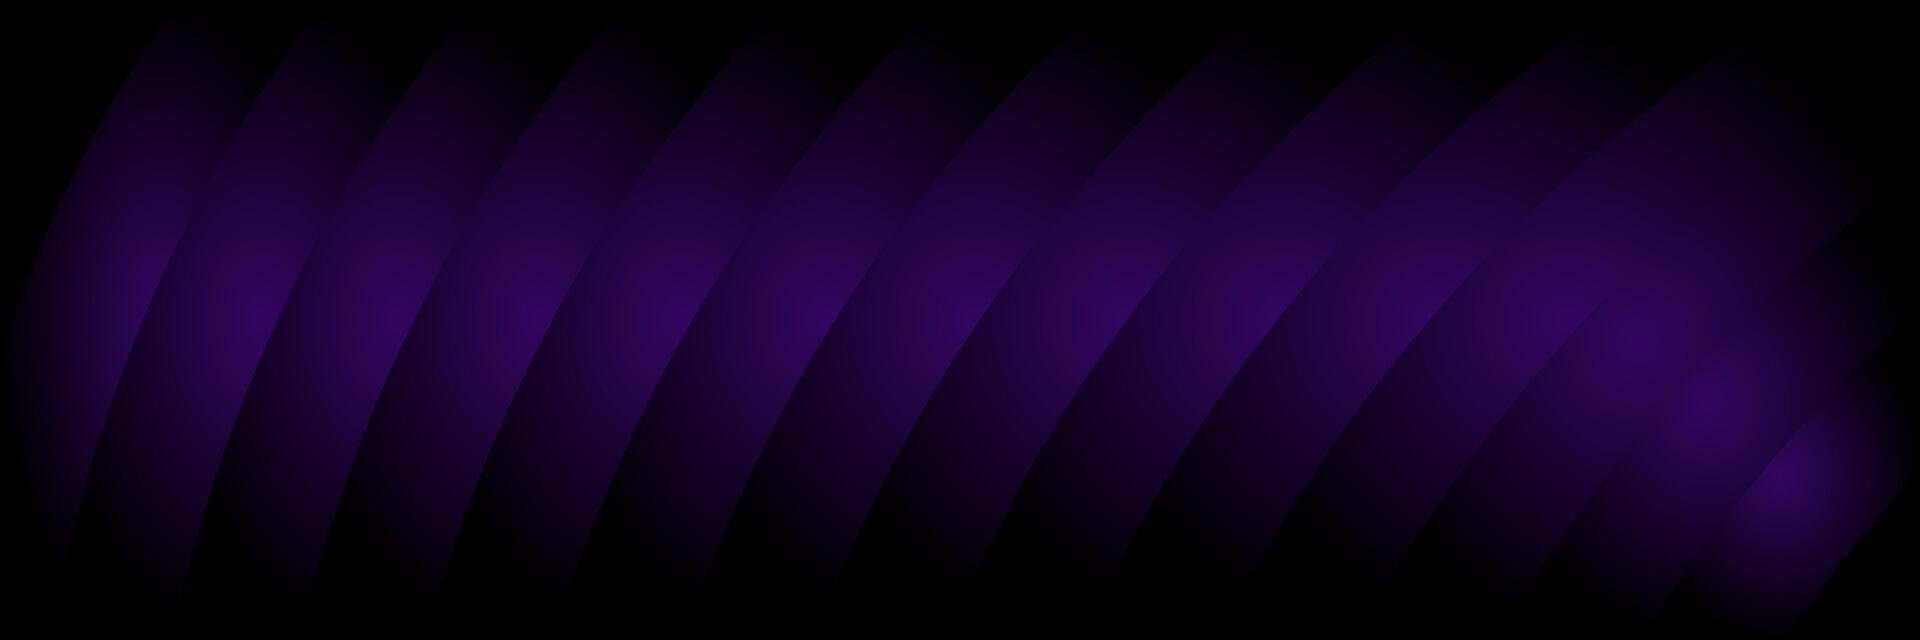 abstrait foncé violet élégant entreprise Contexte vecteur